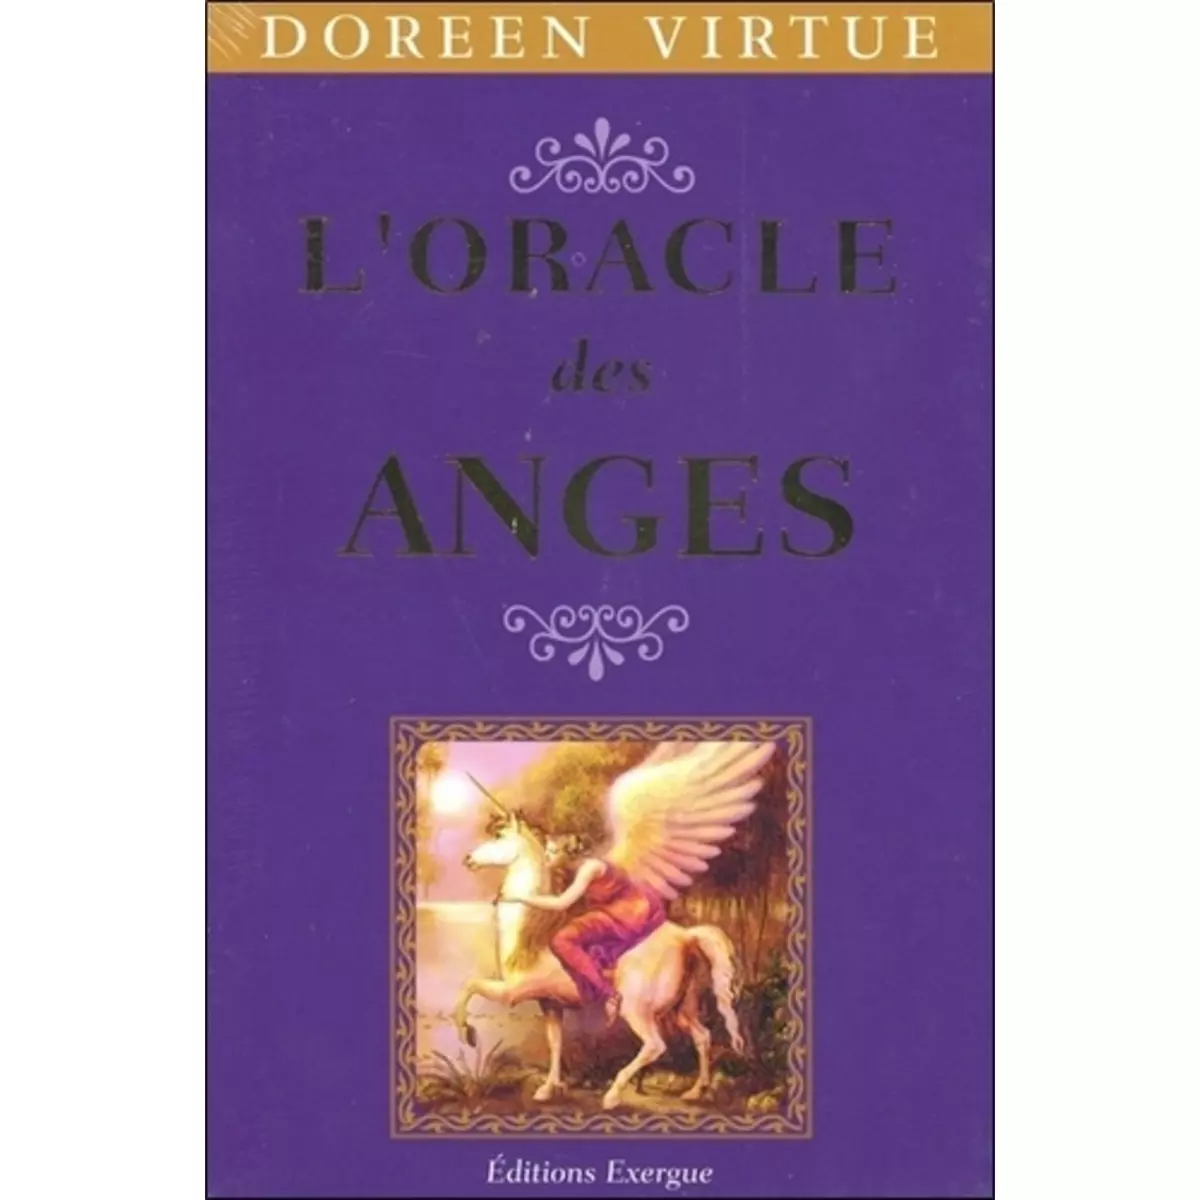  L'ORACLE DES ANGES, Virtue Doreen